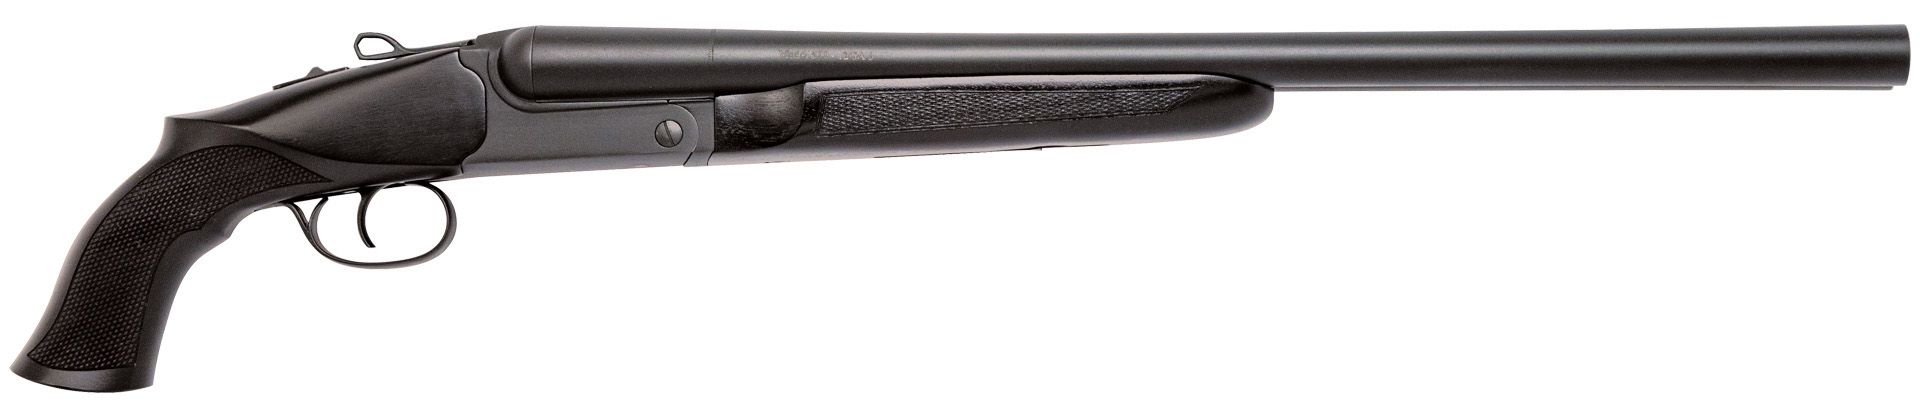 CDLY 500 12GA 20" SXS COACH GUN PG INCLUDED